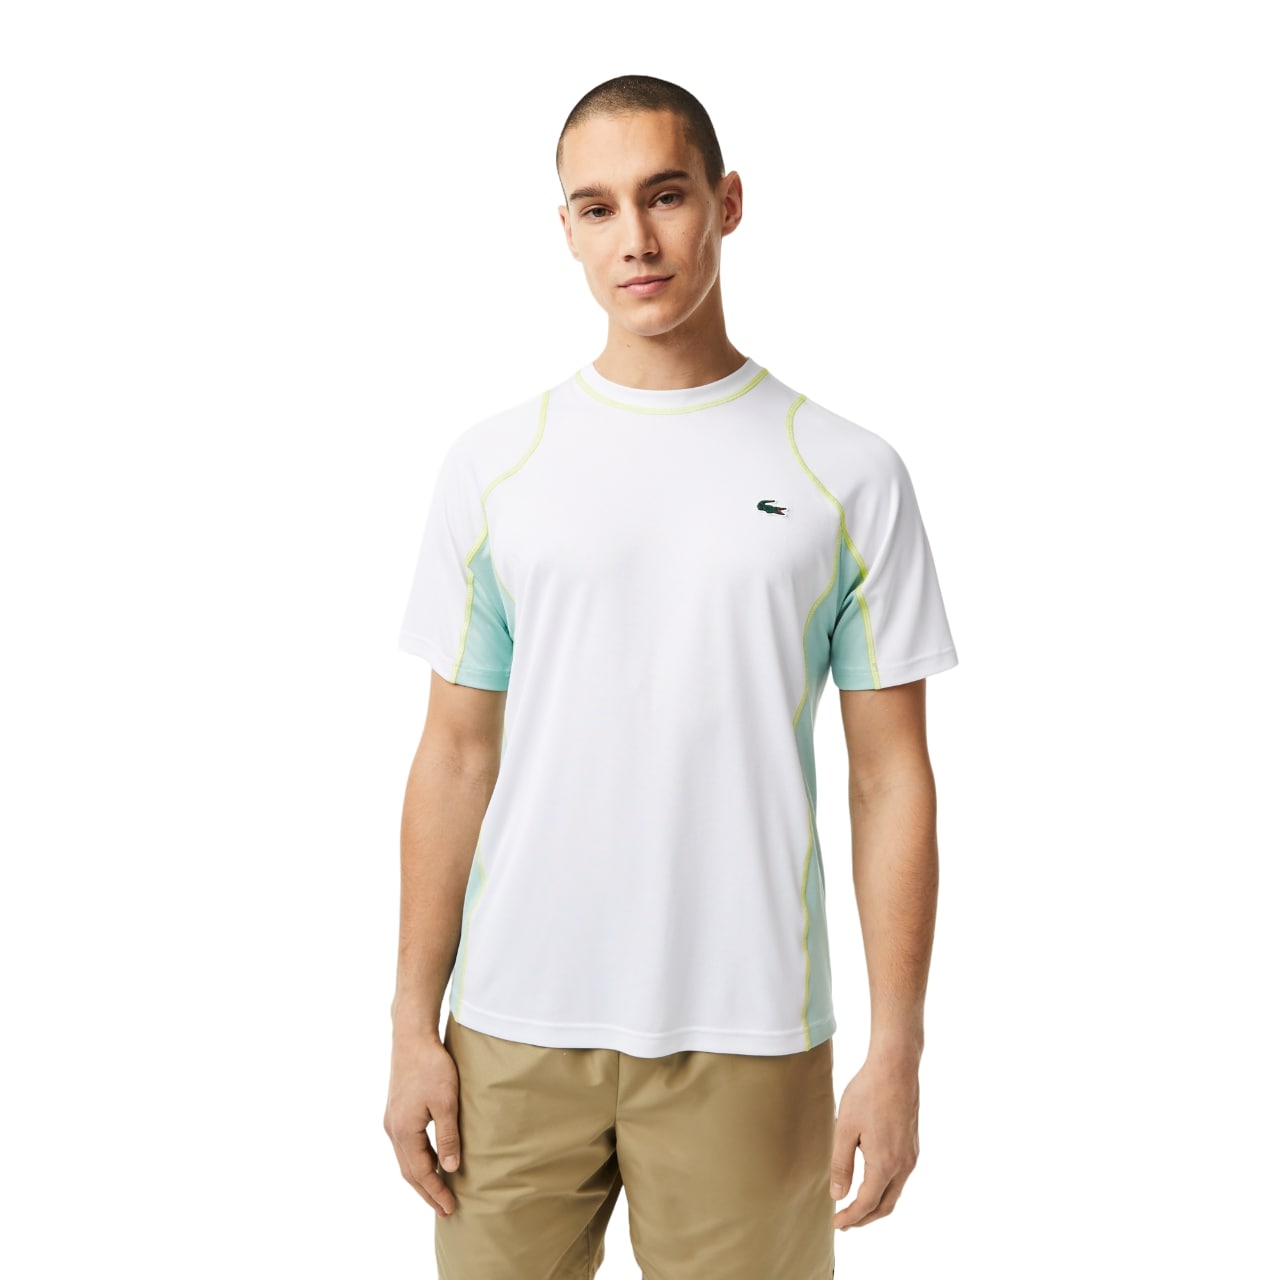 Мужская теннисная футболка Lacoste из износостойкой футболки Piqu�